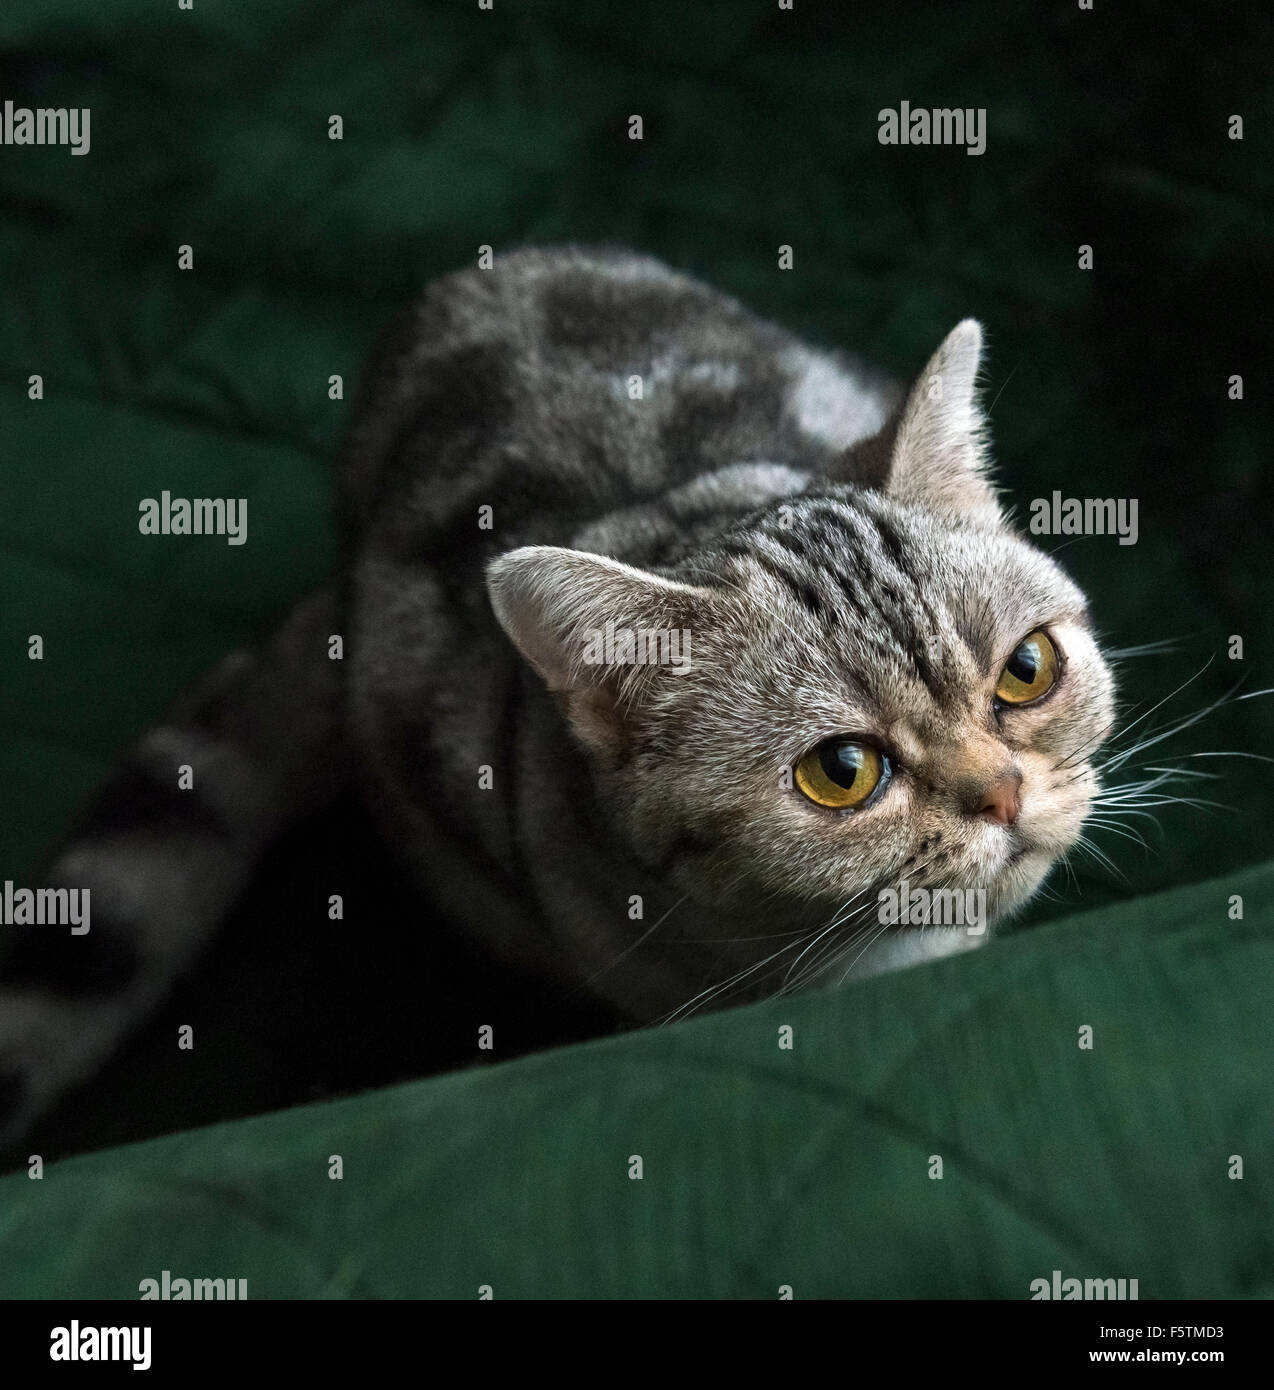 American Shorthair gato atigrado sentado mirando hacia la cámara Foto de stock